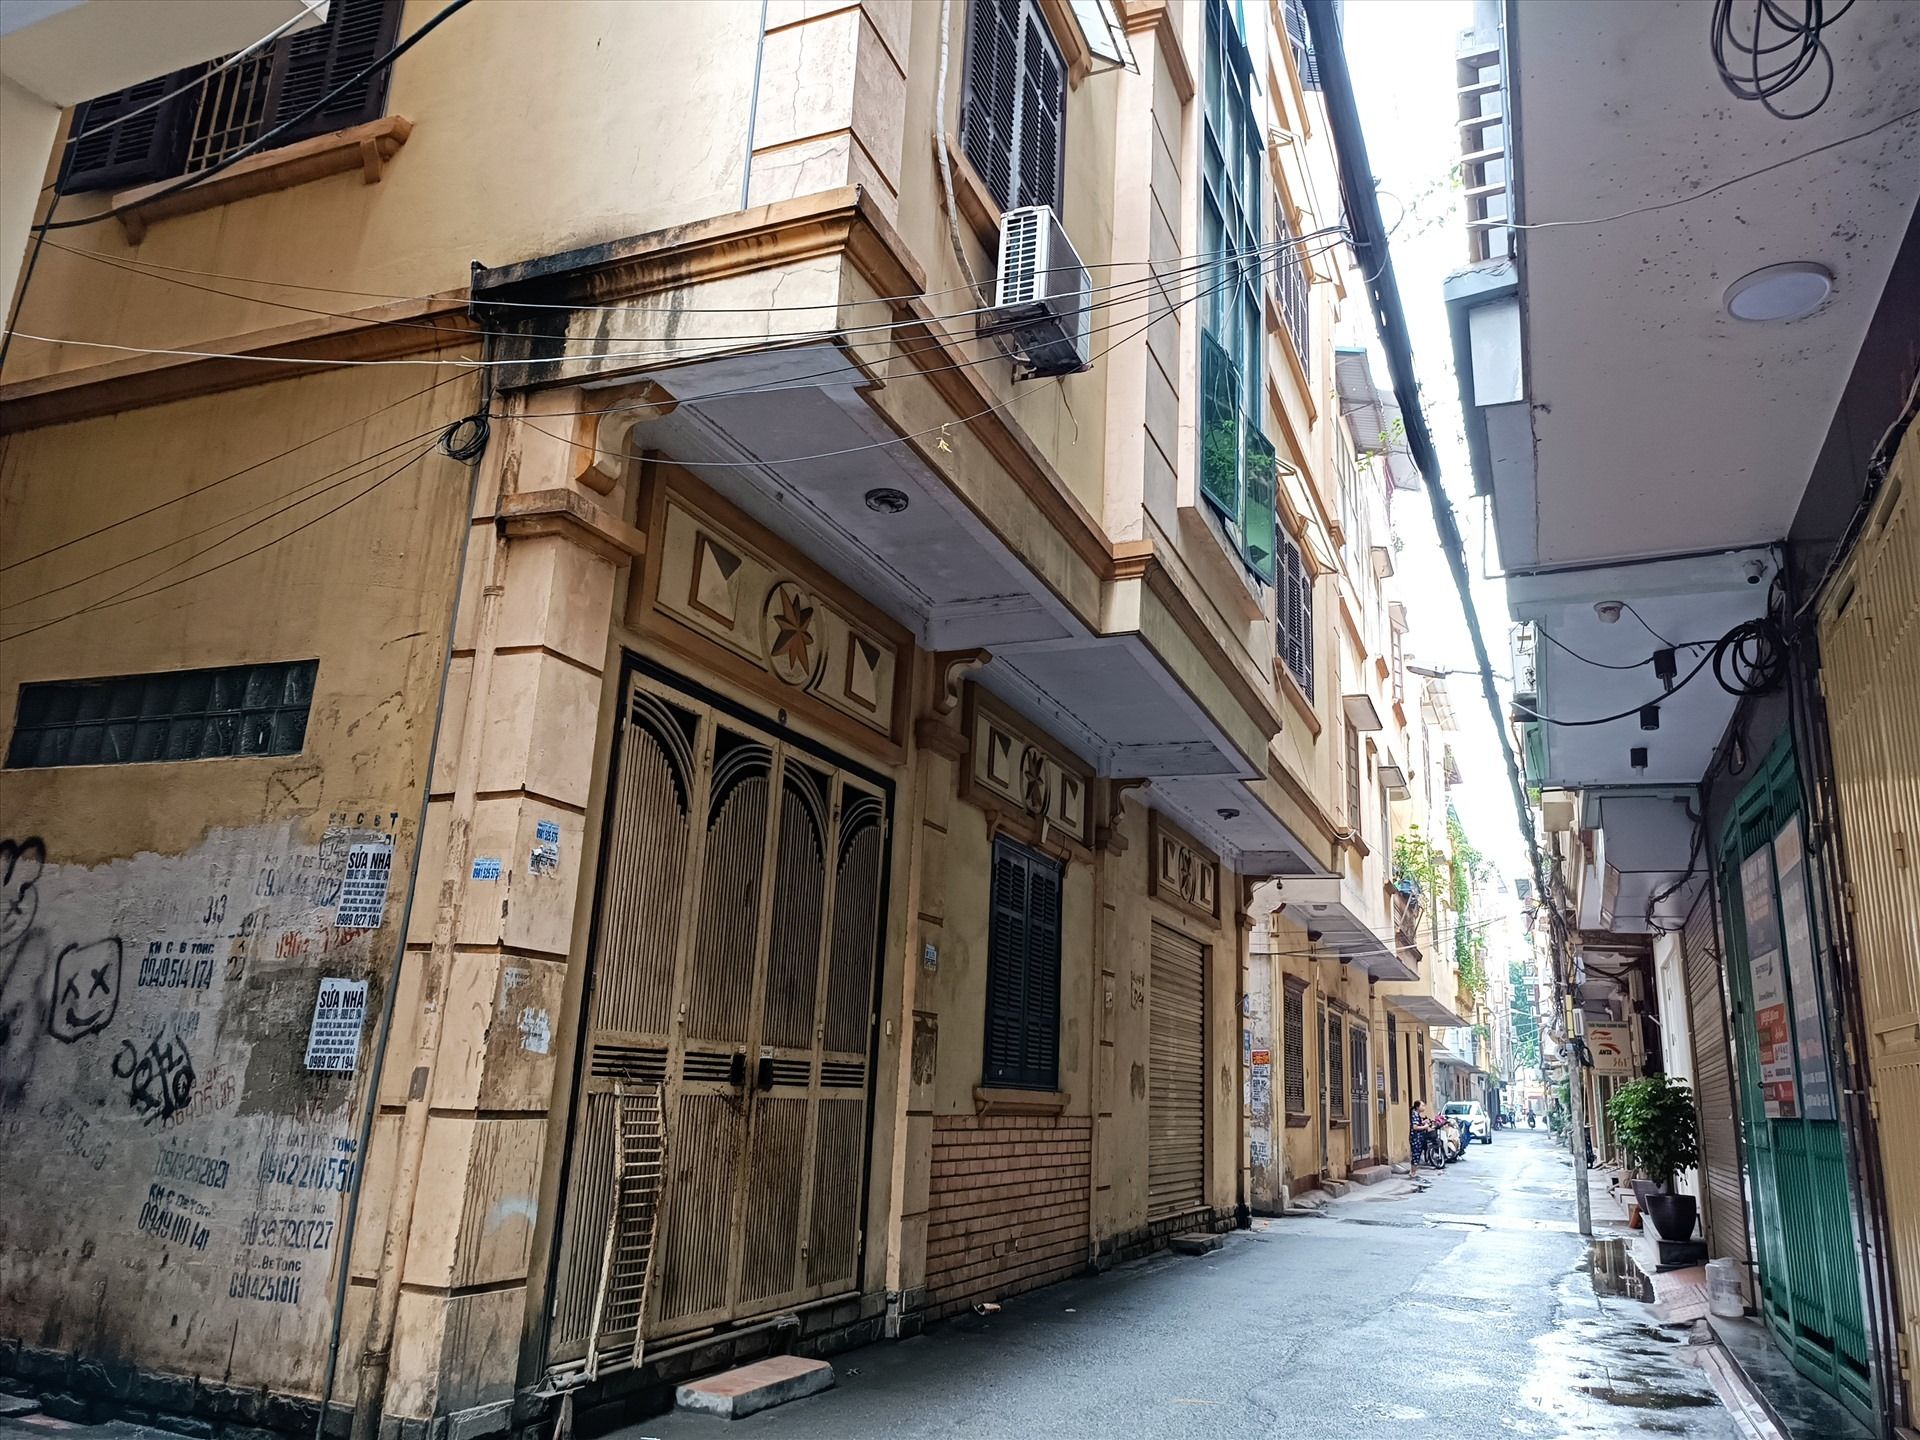 Bán nhà Hà Nội: Nhà trong ngõ "đắt xắt ra miếng", thu hút nhà đầu tư